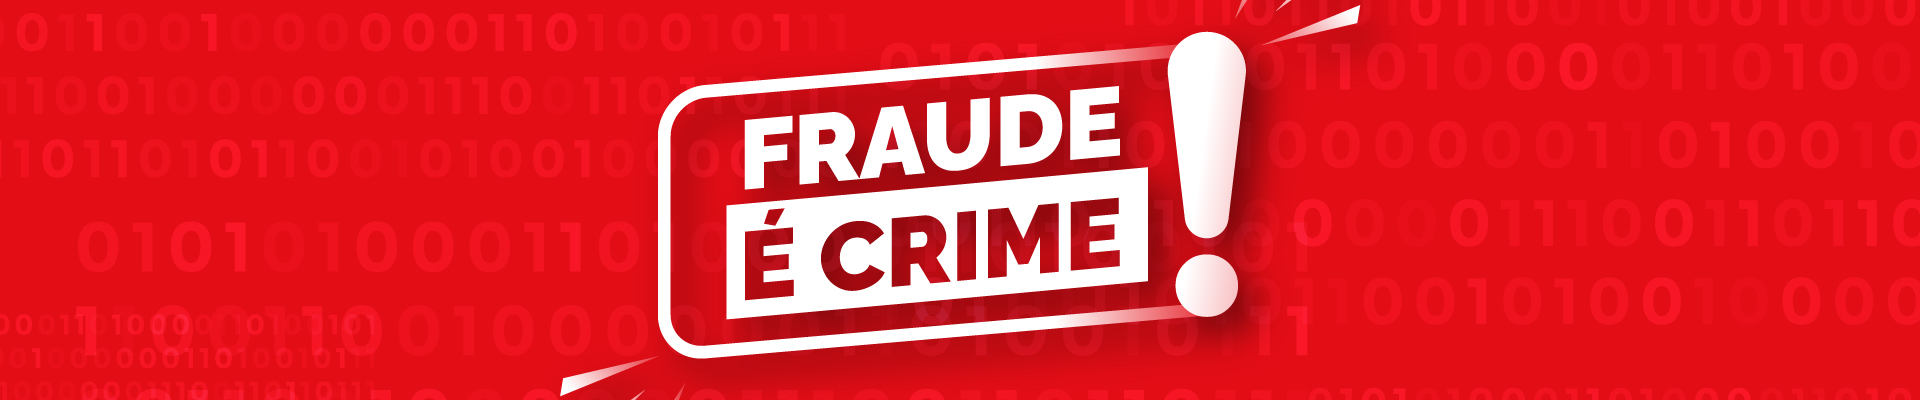 Fraude é crime